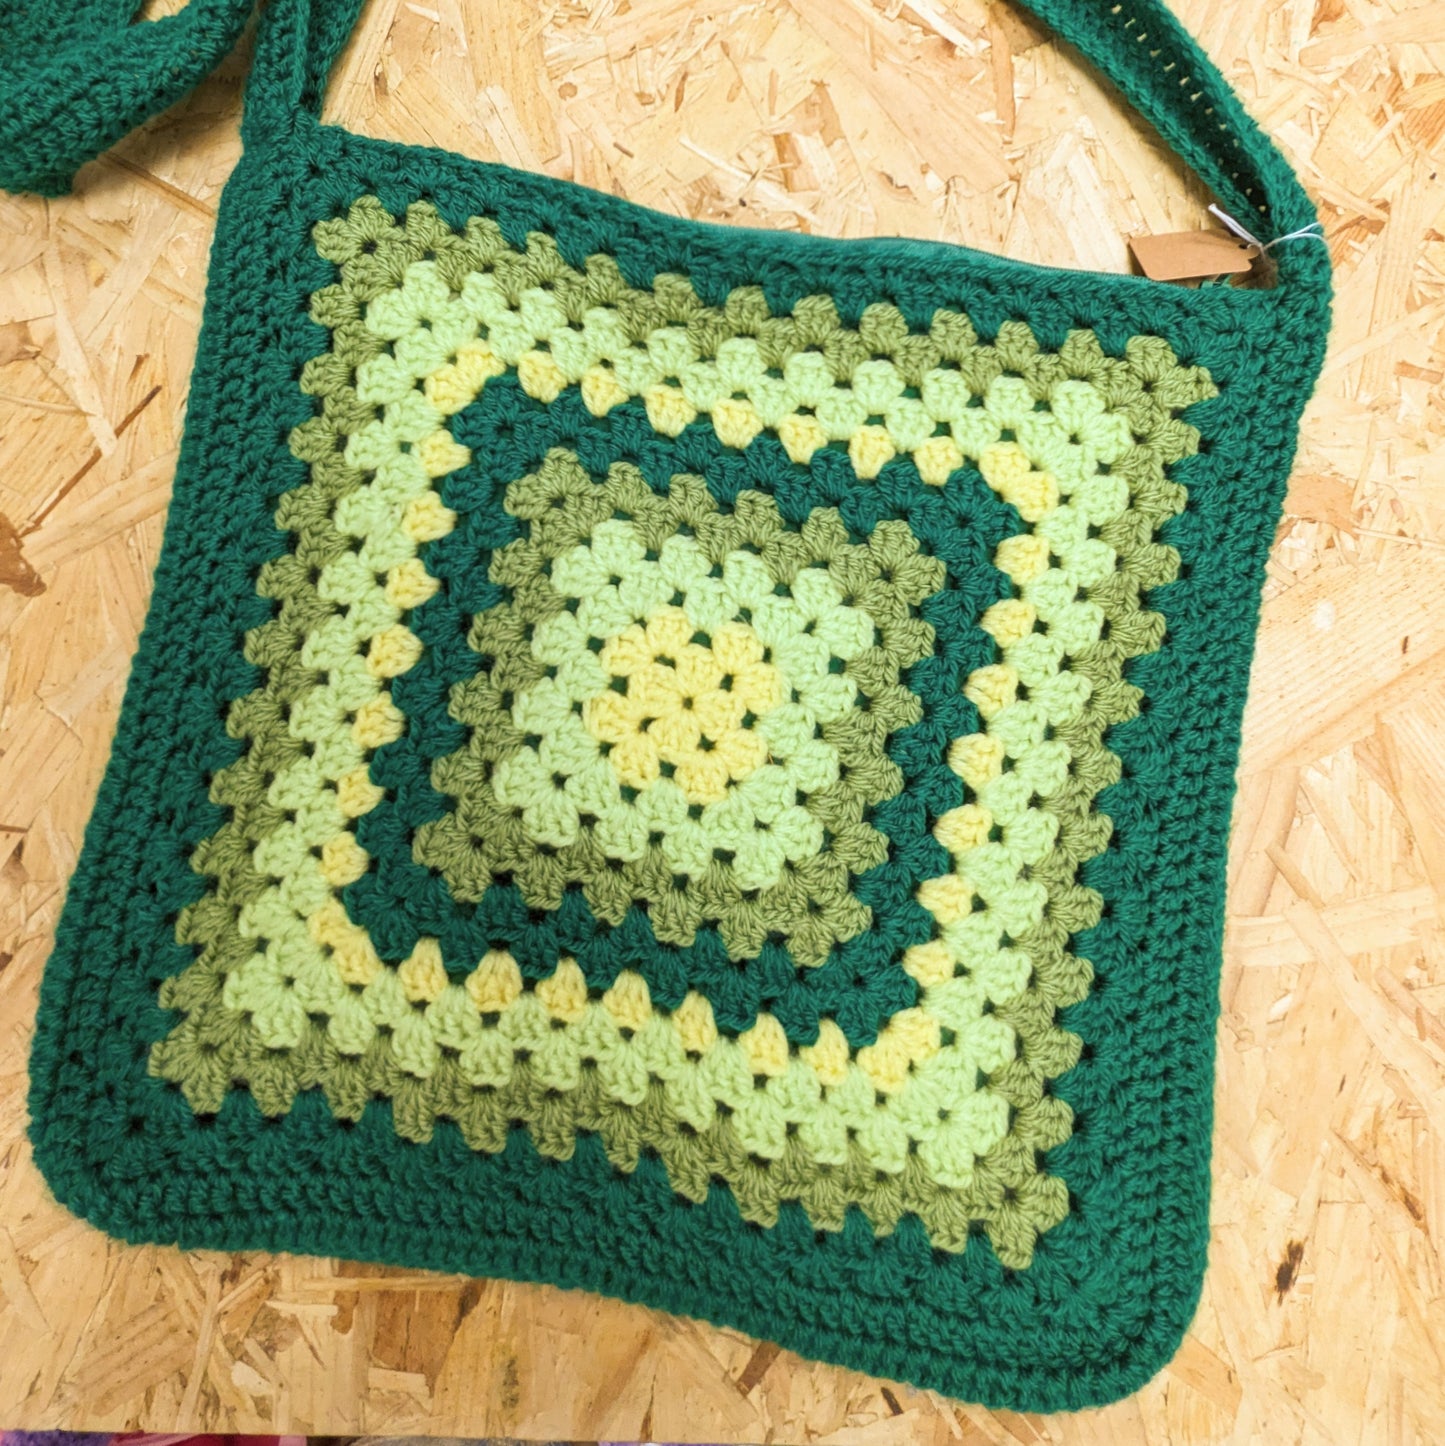 Handmade Crochet cross body bag